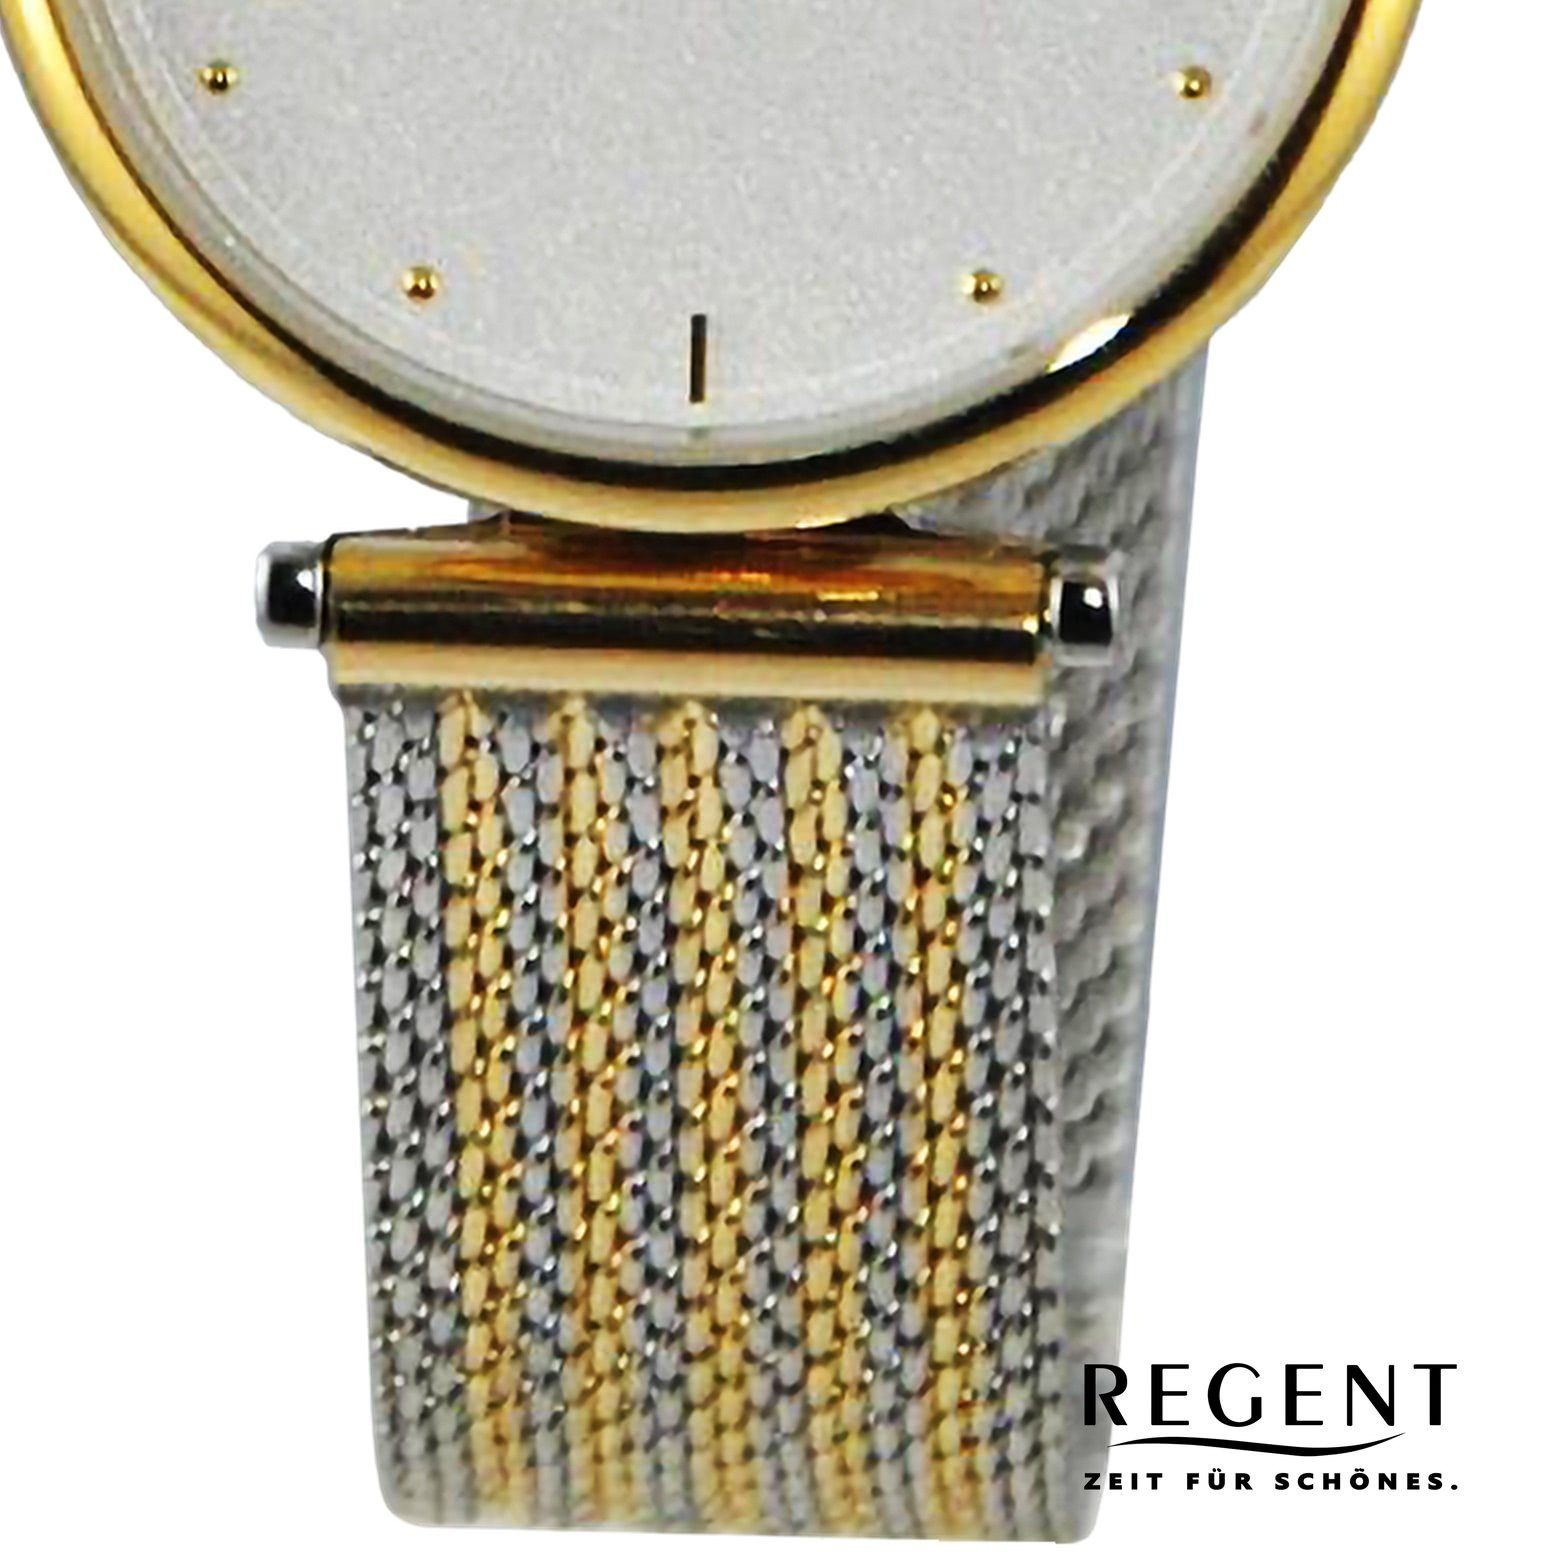 Damen 33mm), extra rund, Regent Regent Quarzuhr Analog, Metallarmband Damen Armbanduhr Armbanduhr groß (ca.